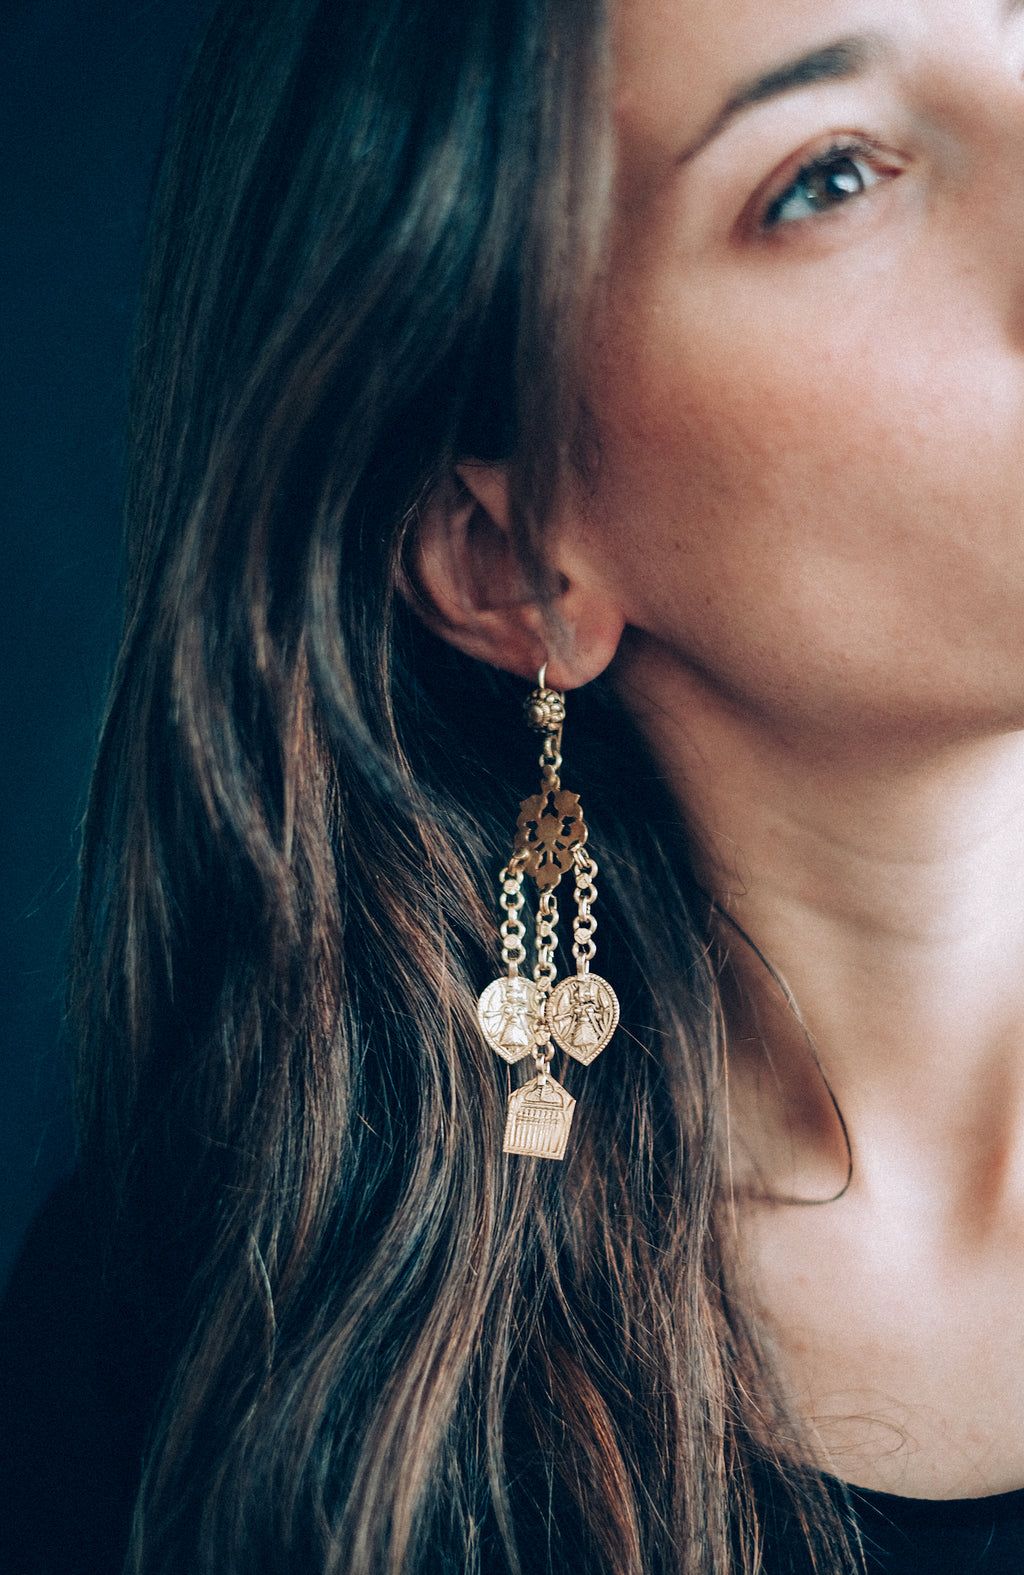 Pendientes de plata con baño de oro y amuletos con dioses tribales de India. Longitud 9´5 cm. Peso 16 g. joyas artesanales. Ethnic silver earrings. Handcrafted jewelry. 